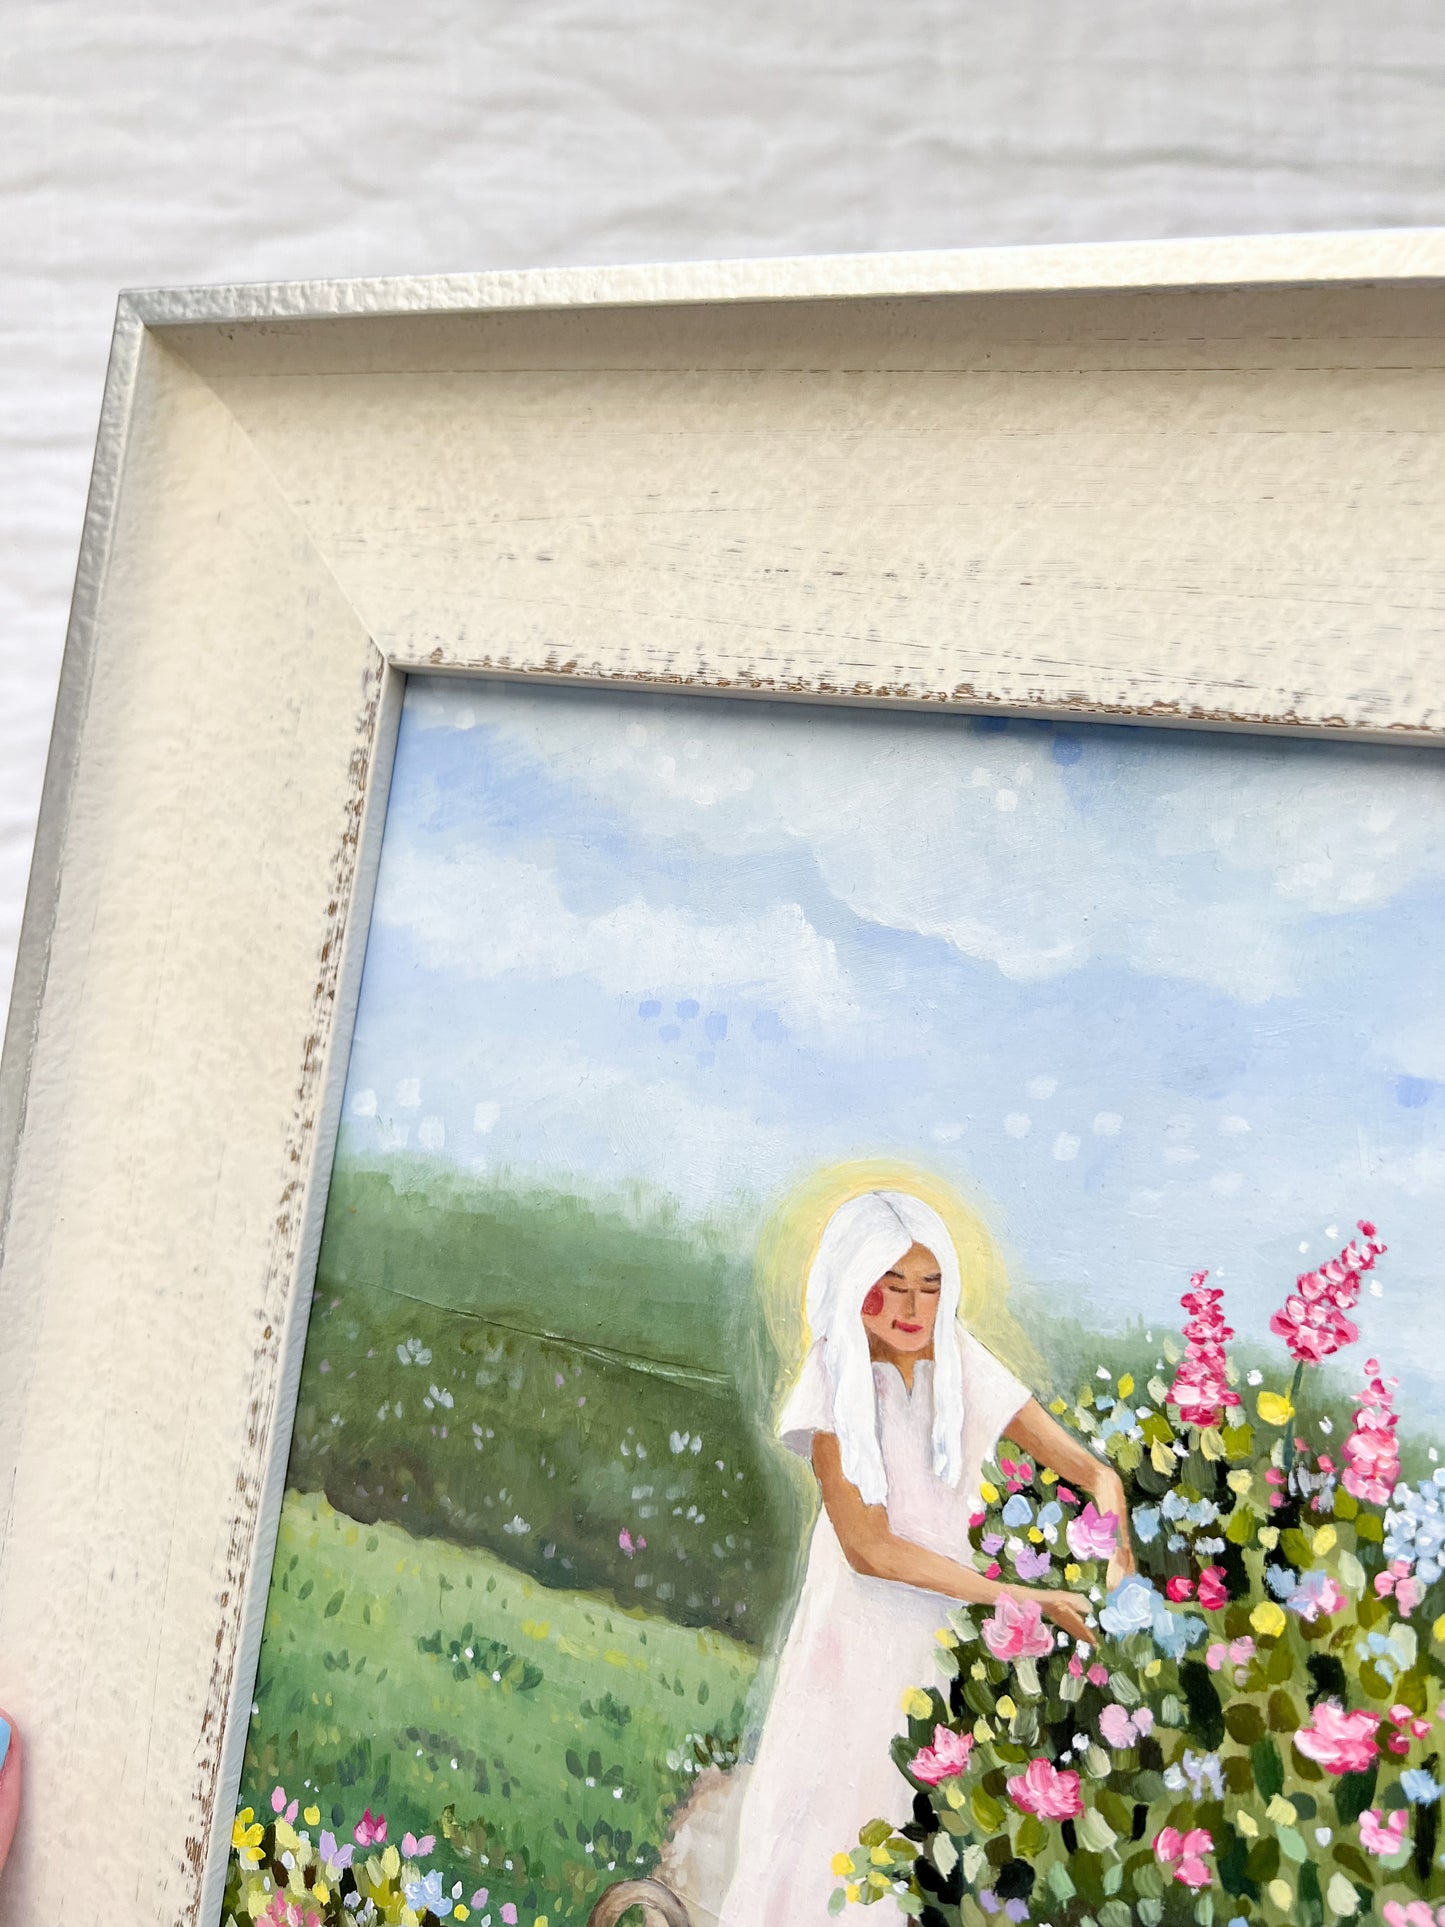 'She Tends To Her Garden' Framed Original Oil Painting